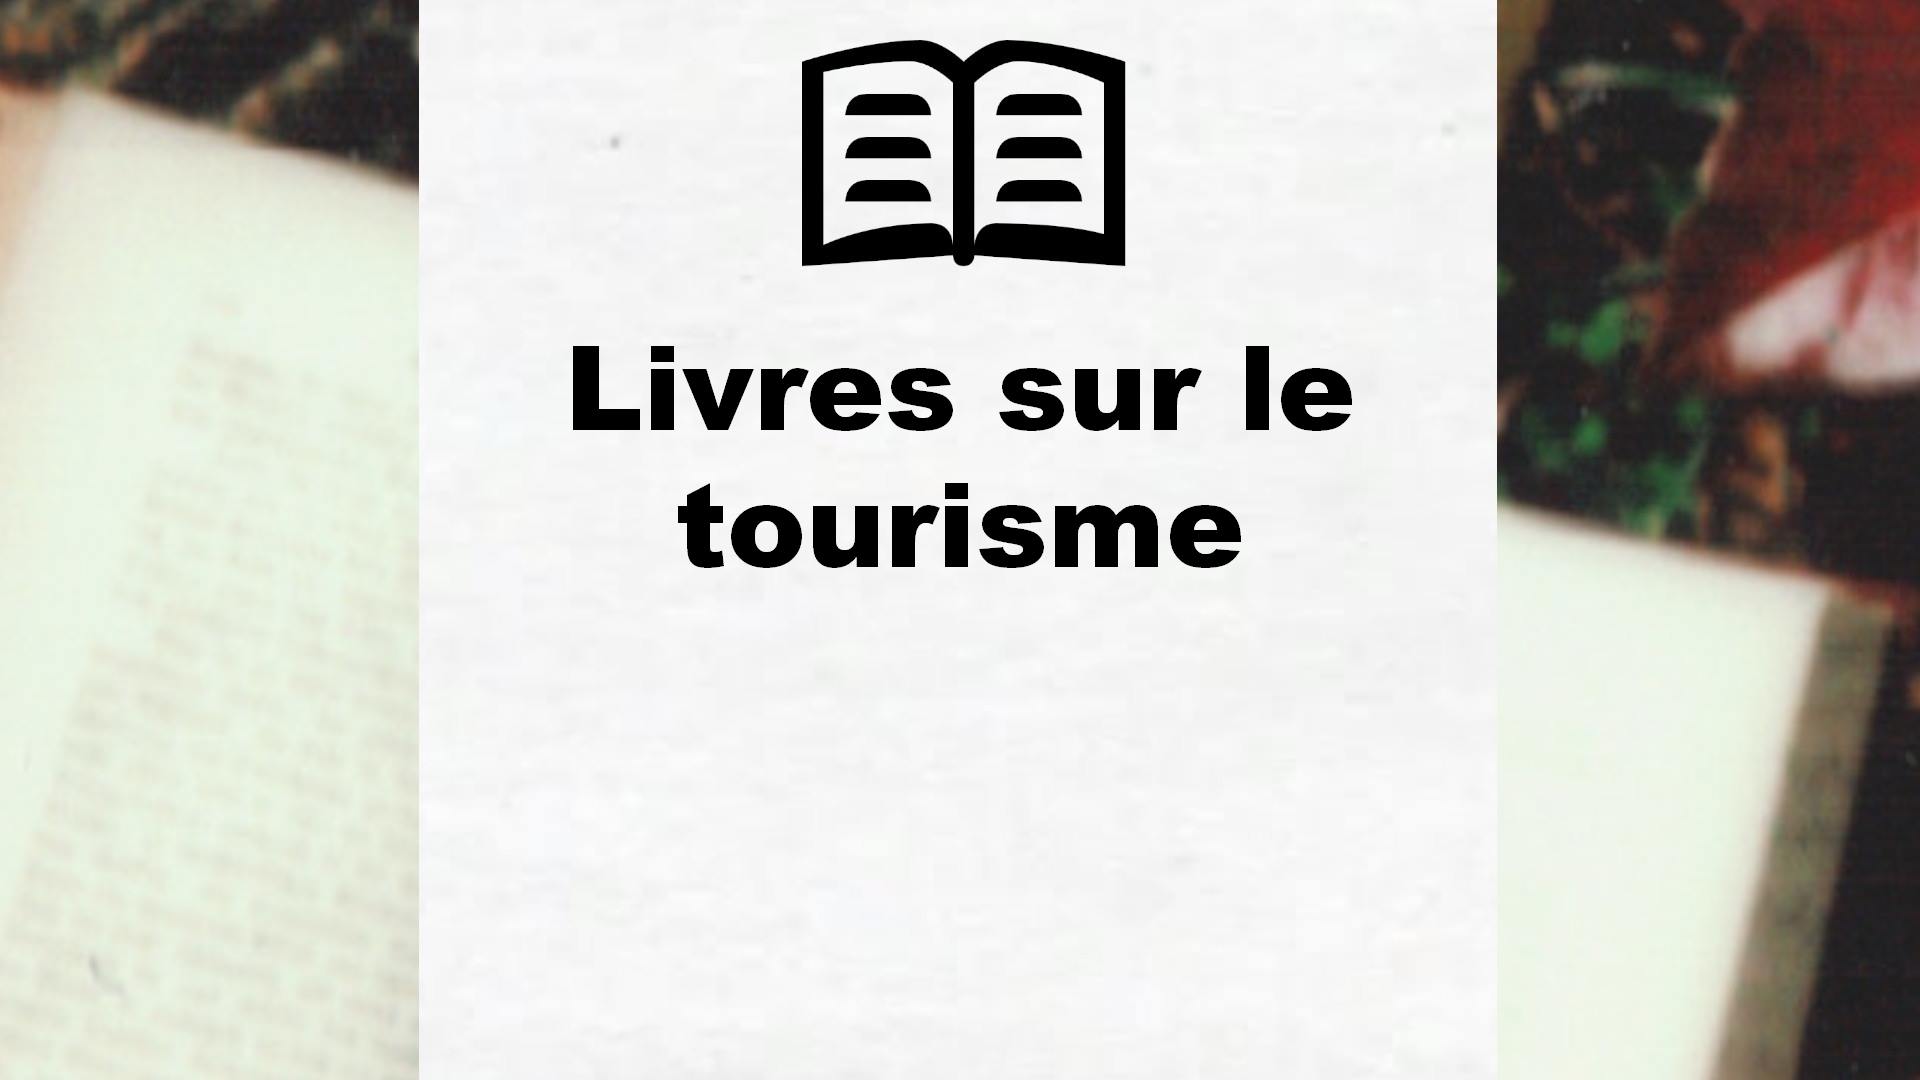 Livres sur le tourisme